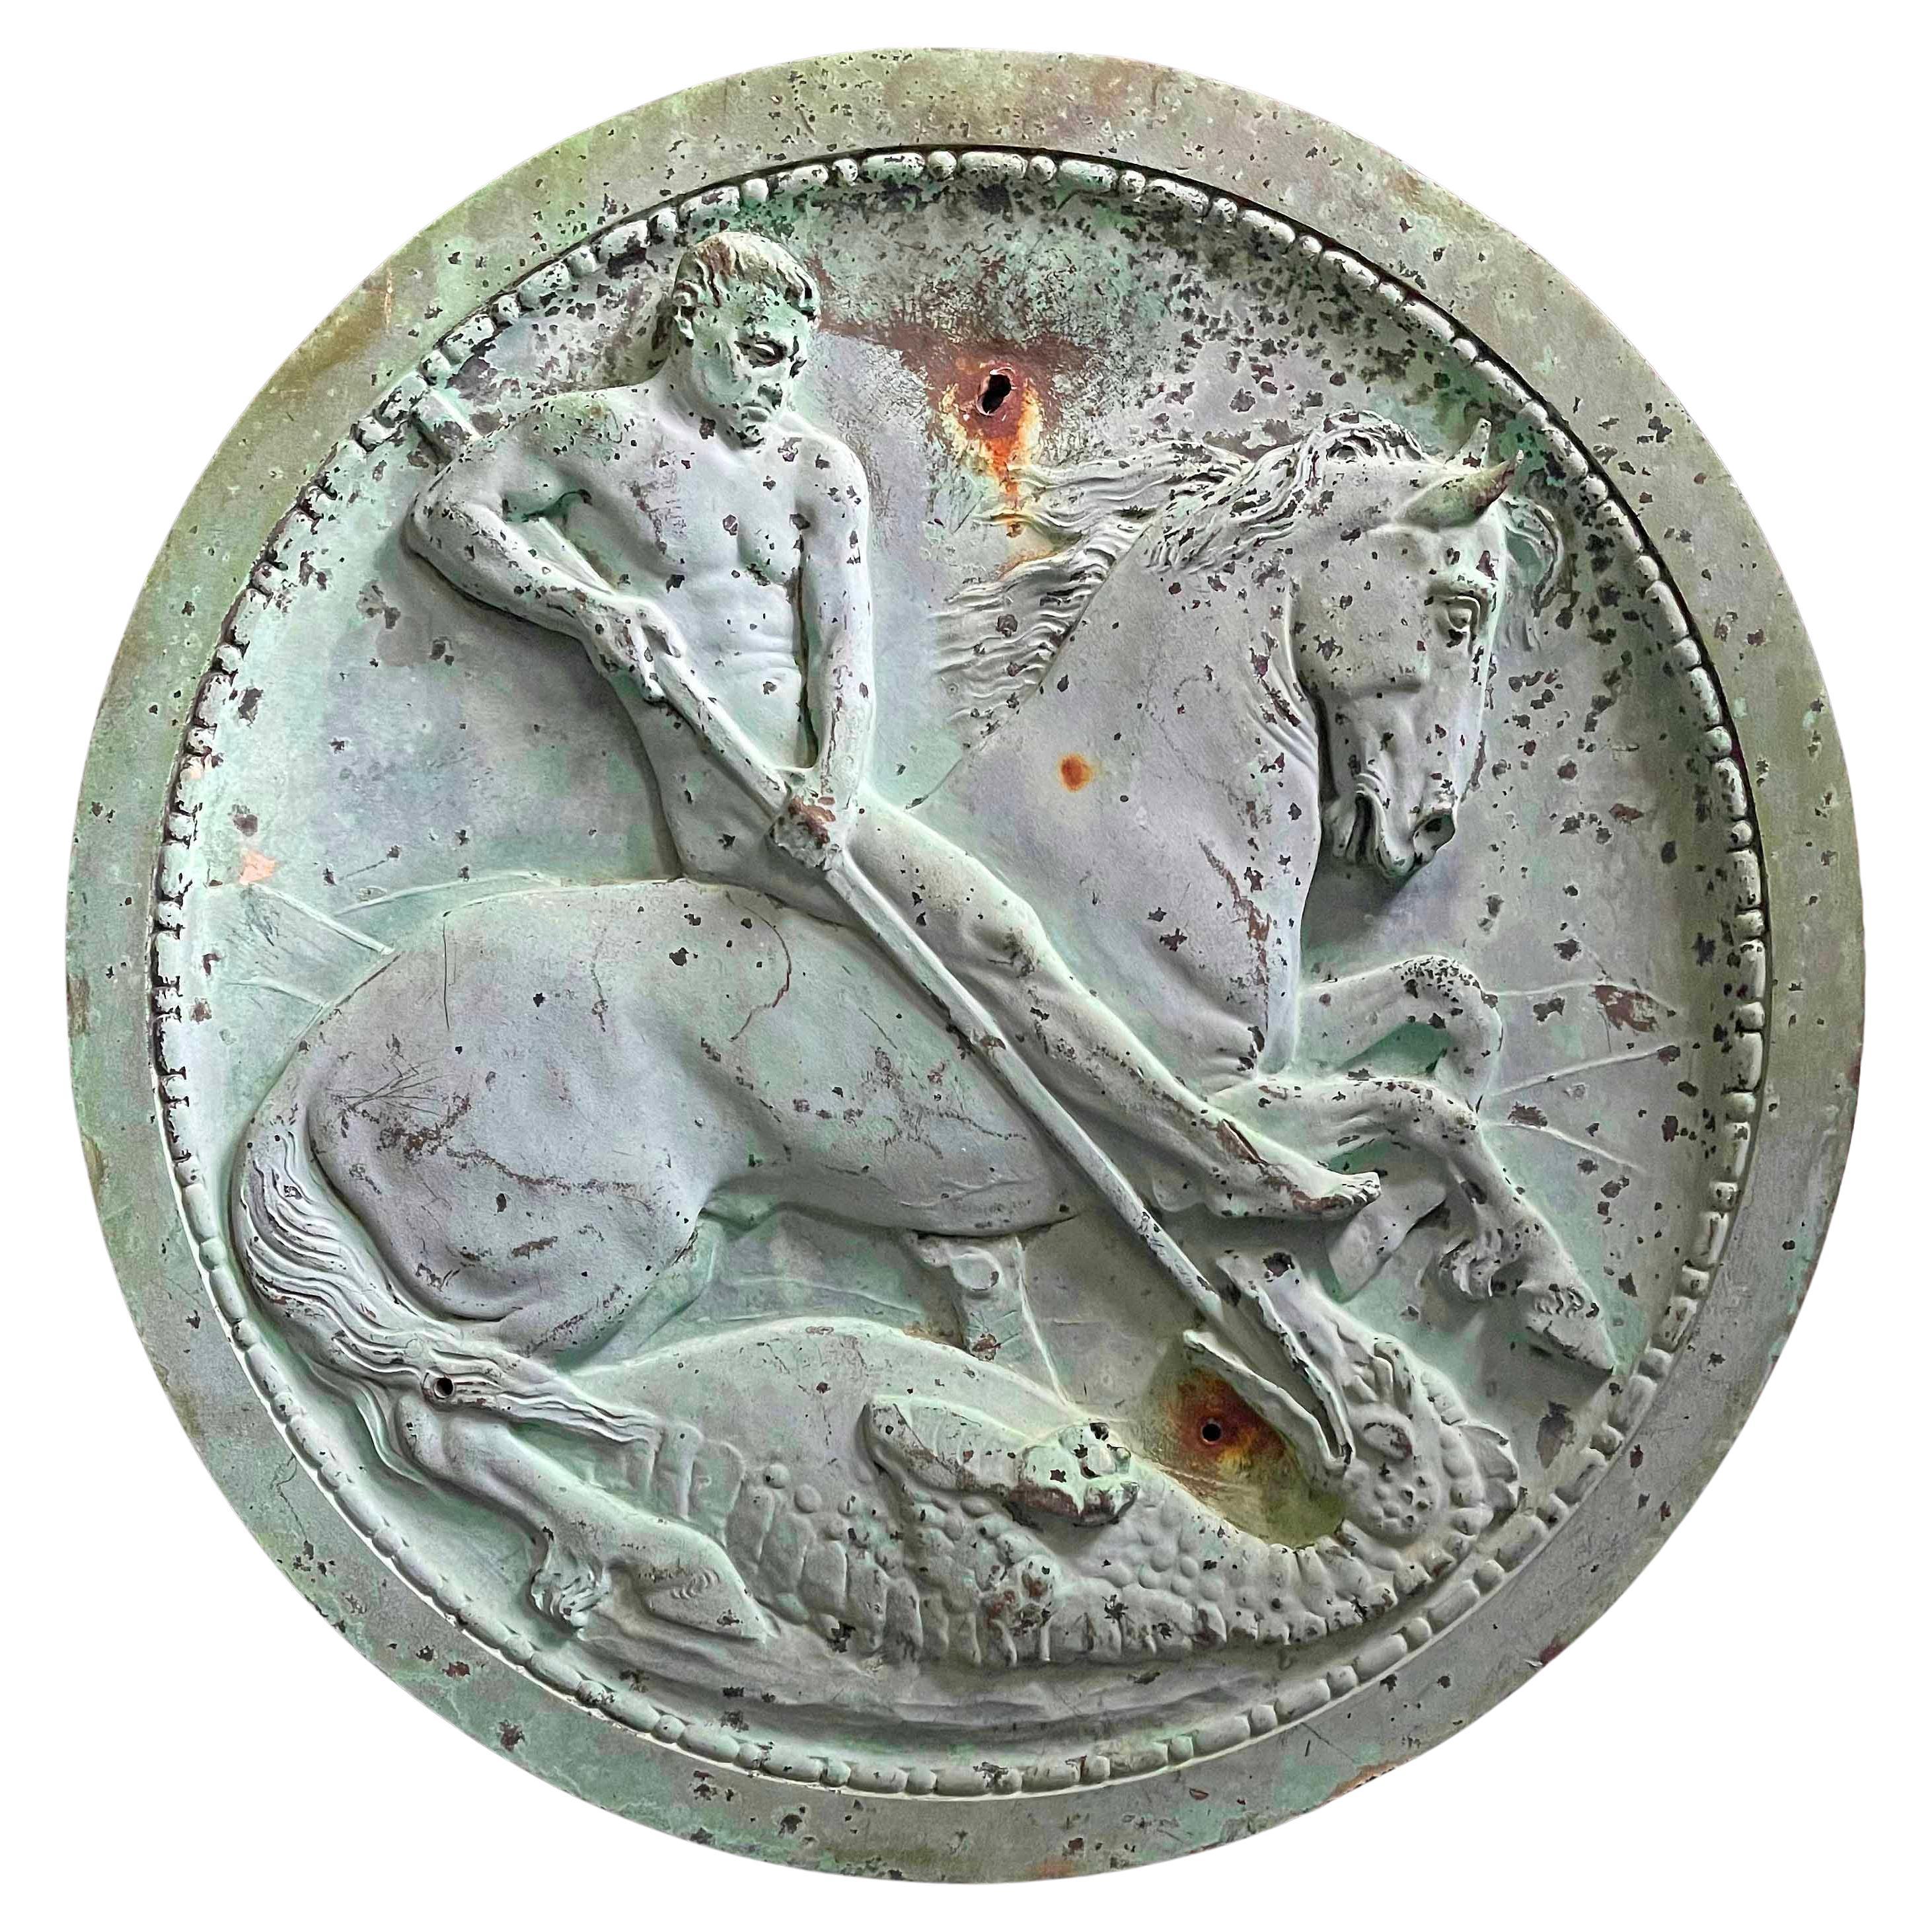 « St. George et le dragon », grande sculpture en relief en bronze avec nu masculin